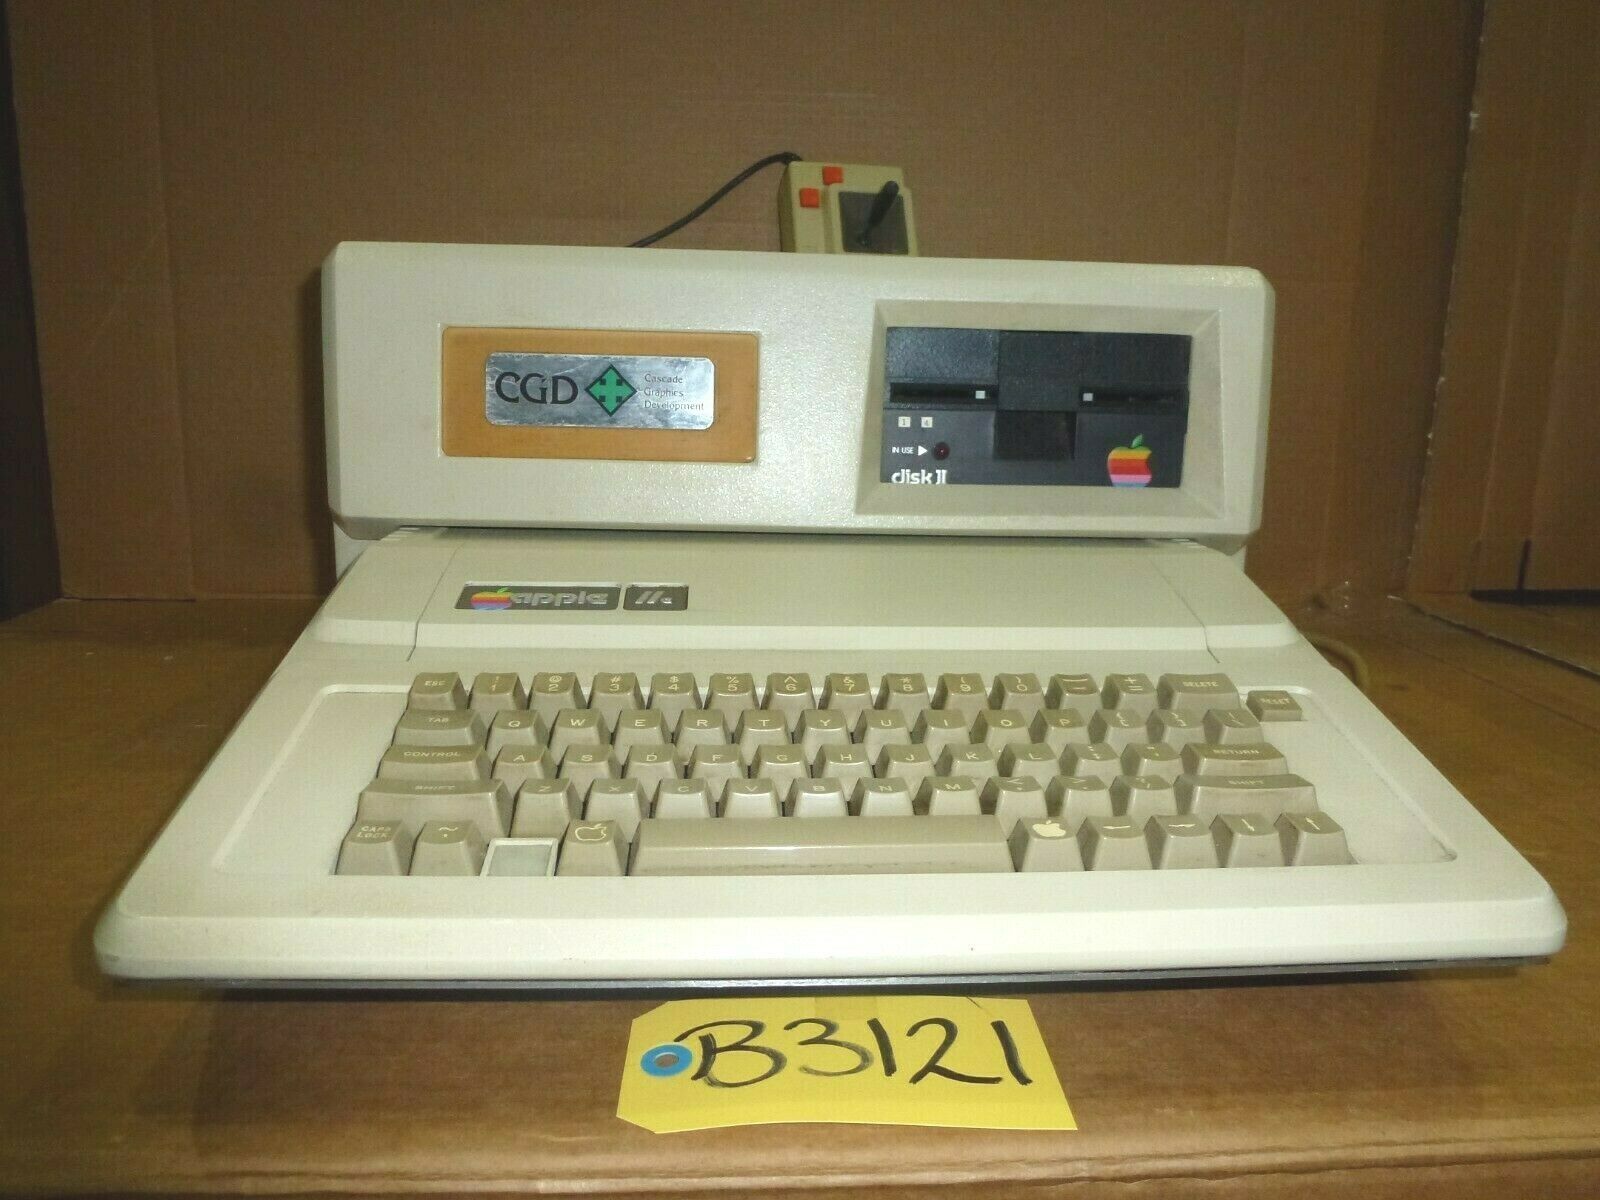 Apple IIe A2S2064 W/Cascade Graphics Development Deck, Disk Drive & Joystick - $425.00